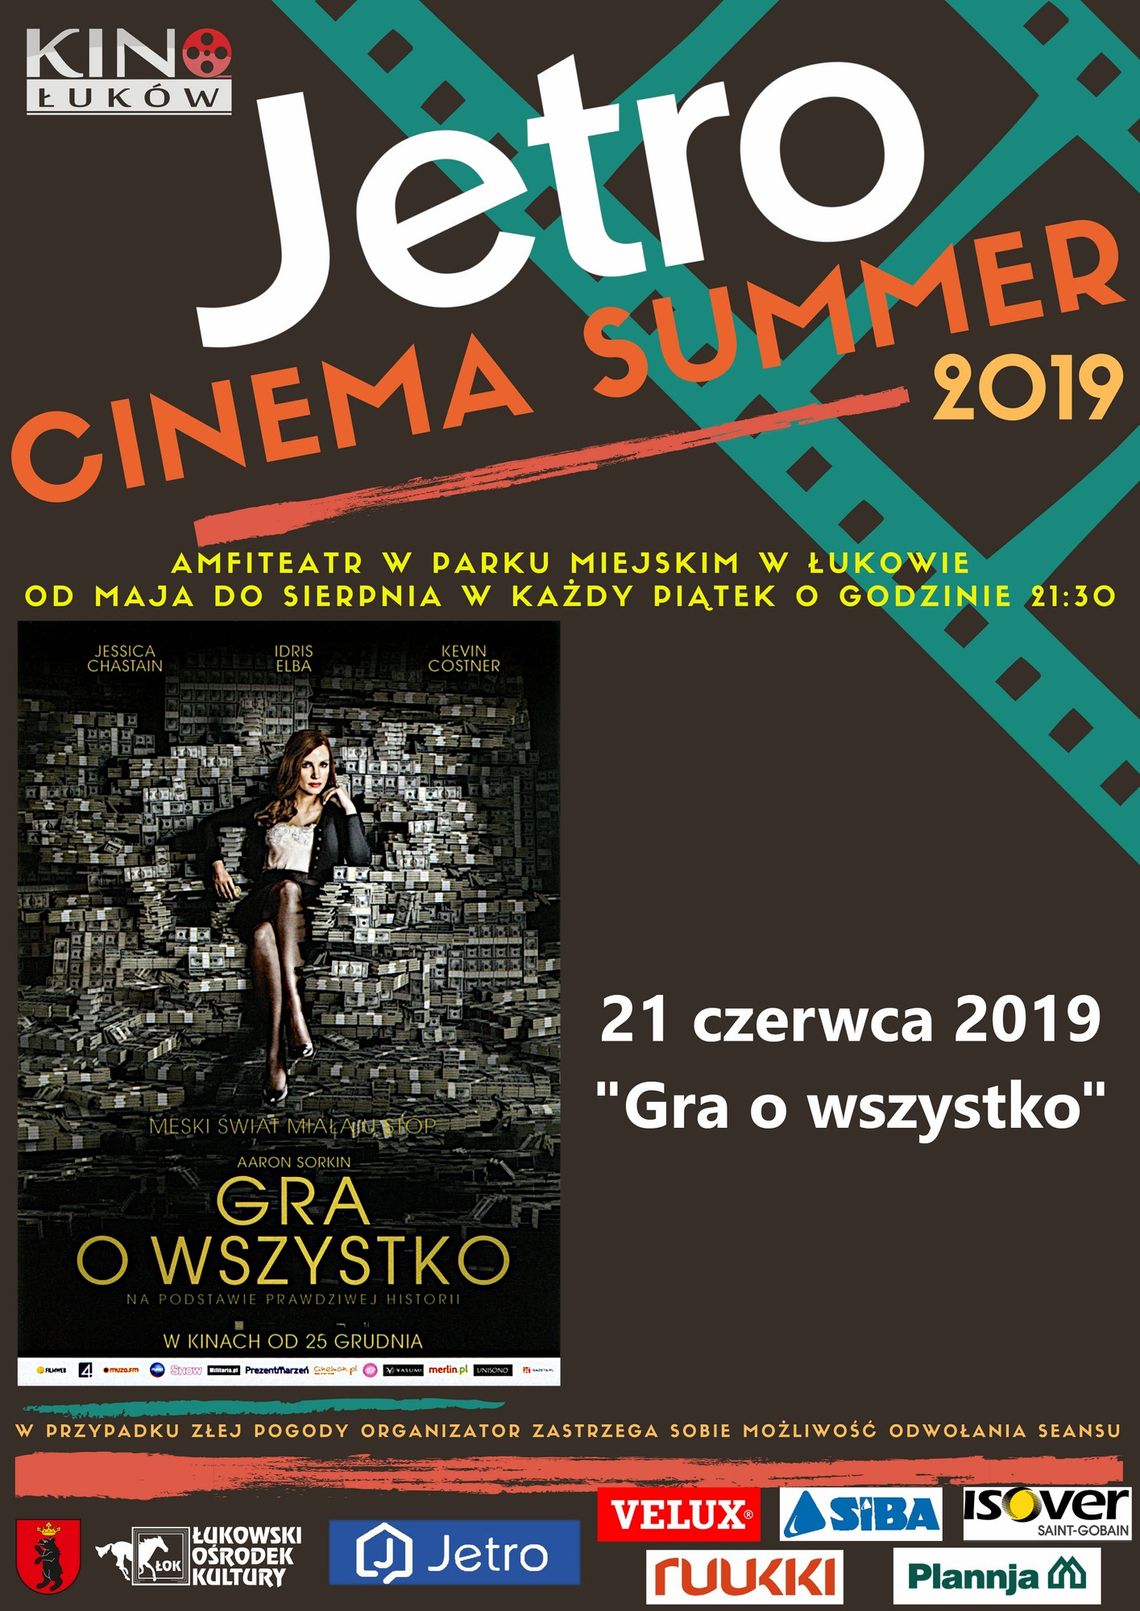 Jetro Cinema Summer 2019 "Gra o wszystko" /21 czerwca 2019